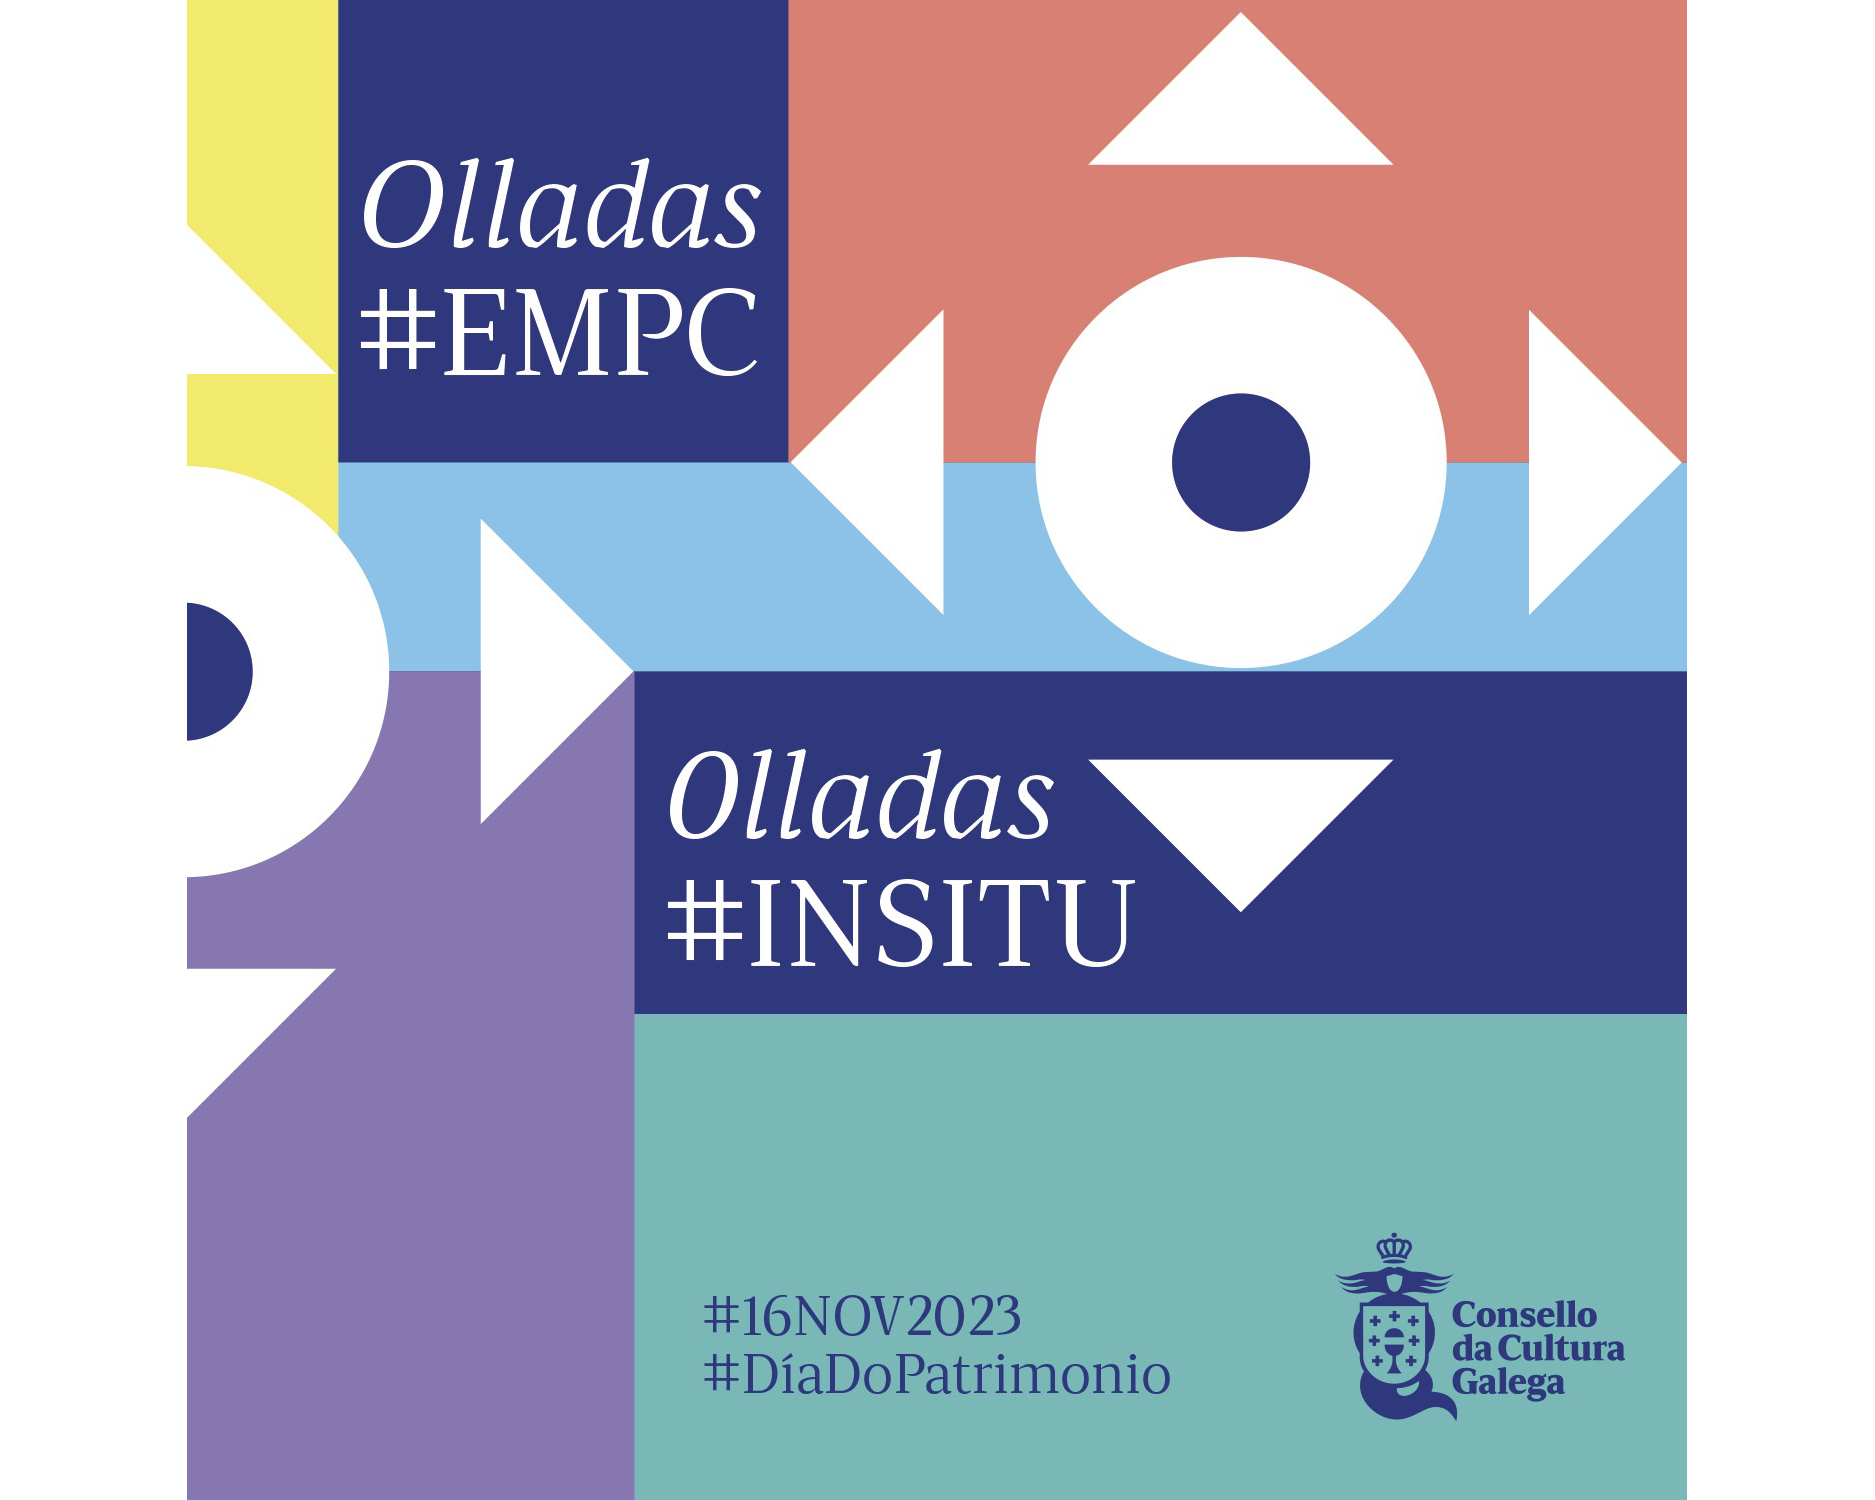 Olladas #EMPC Olladas #INSITU Exhibition opening image